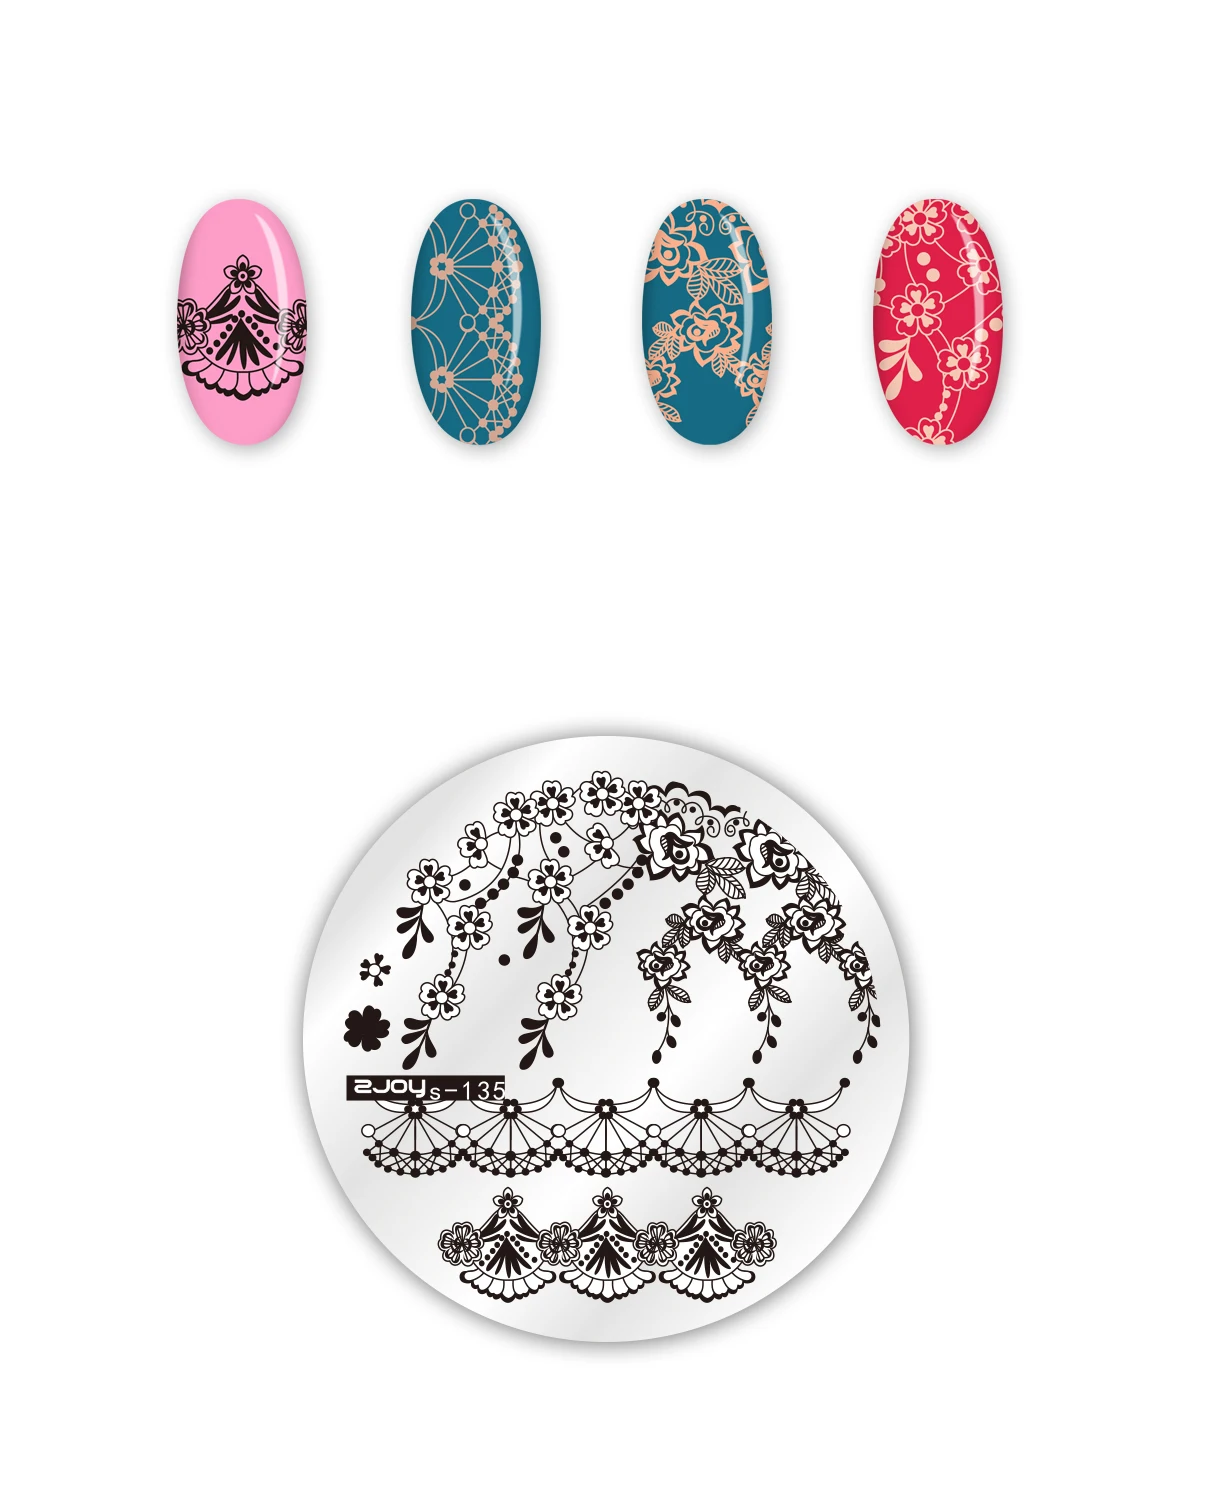 Стемпинг год Круглые штамповки для ногтей пластины цветок Геометрическая обезьяна дизайн ногтей трафареты для дизайна ногтей штамп шаблон